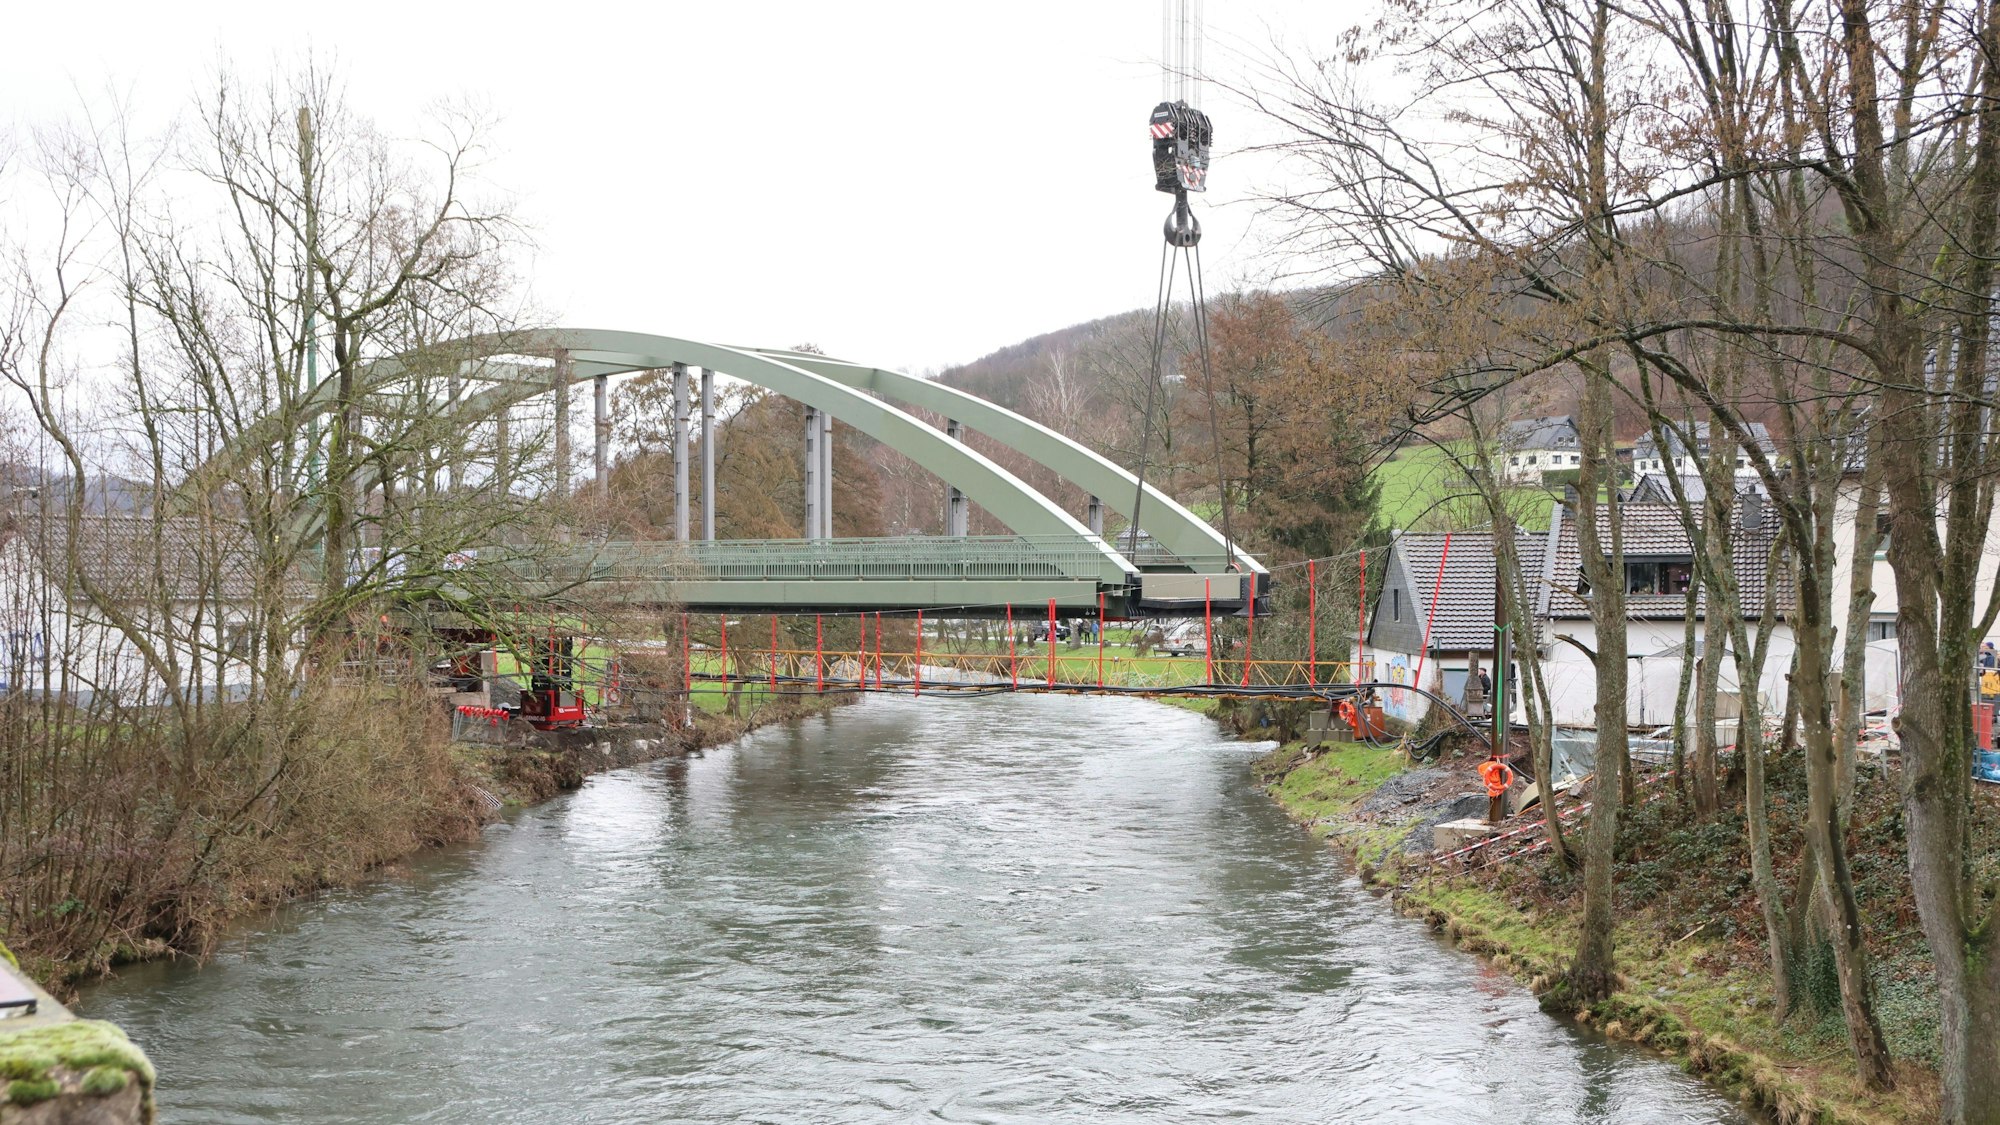 Eine Stahlbrücke mit Bogen über einem Fluss.